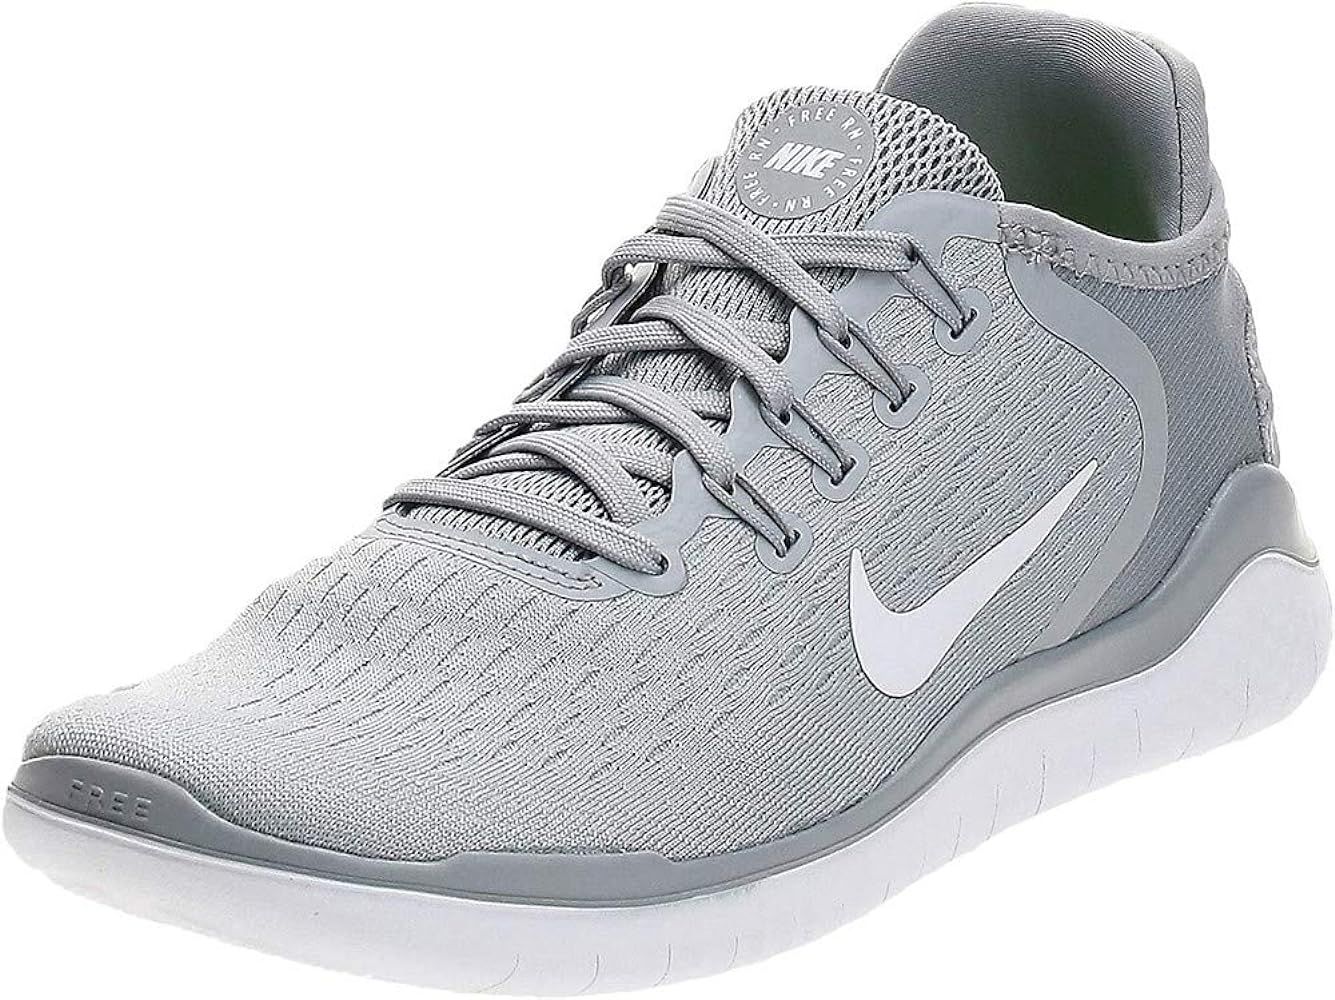 Nike Women's Sneaker Running Shoes | Amazon (US)